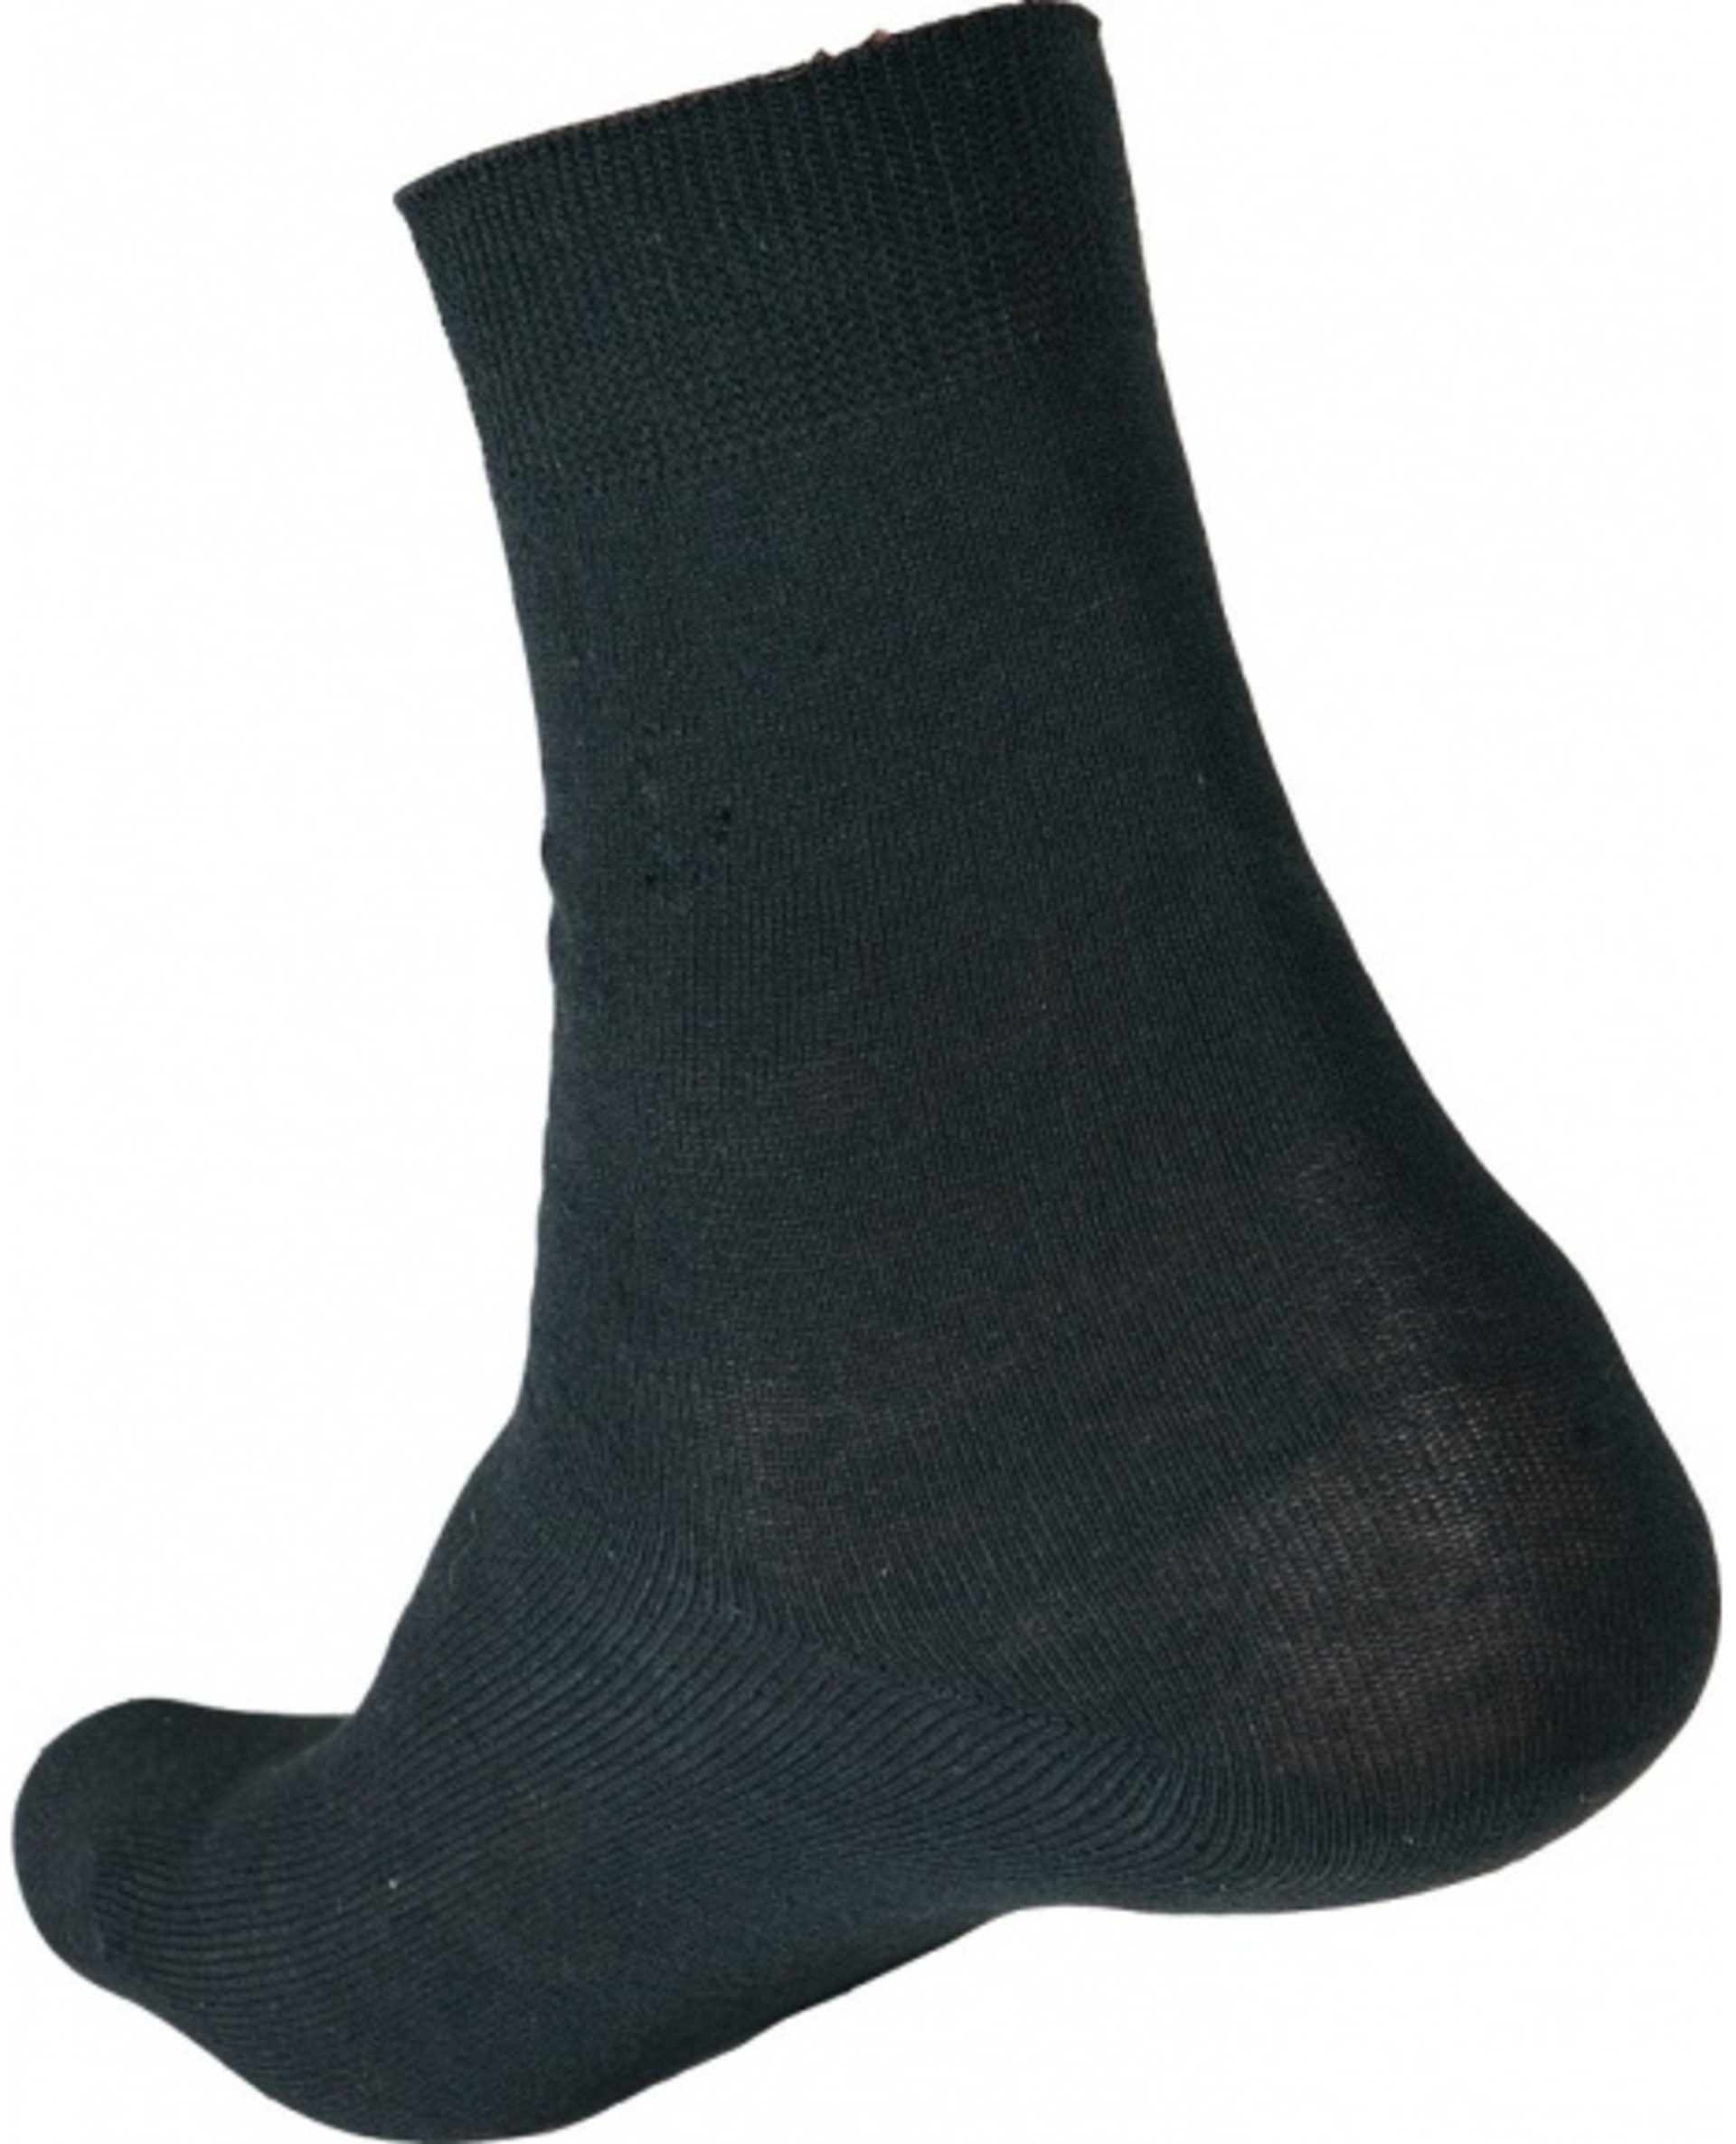 Ponožky CRV MERGE 45